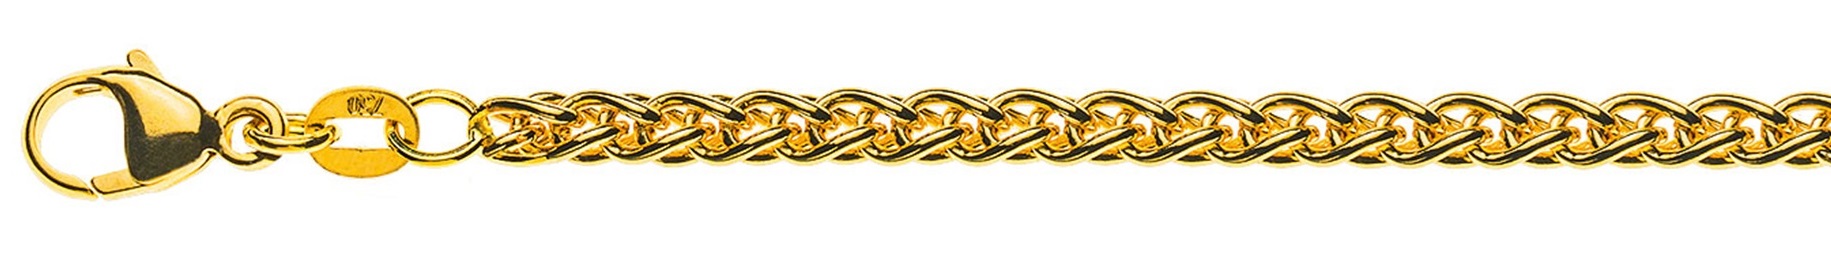 AURONOS Prestige Collier chaîne en or jaune 18K 42cm 3.3mm